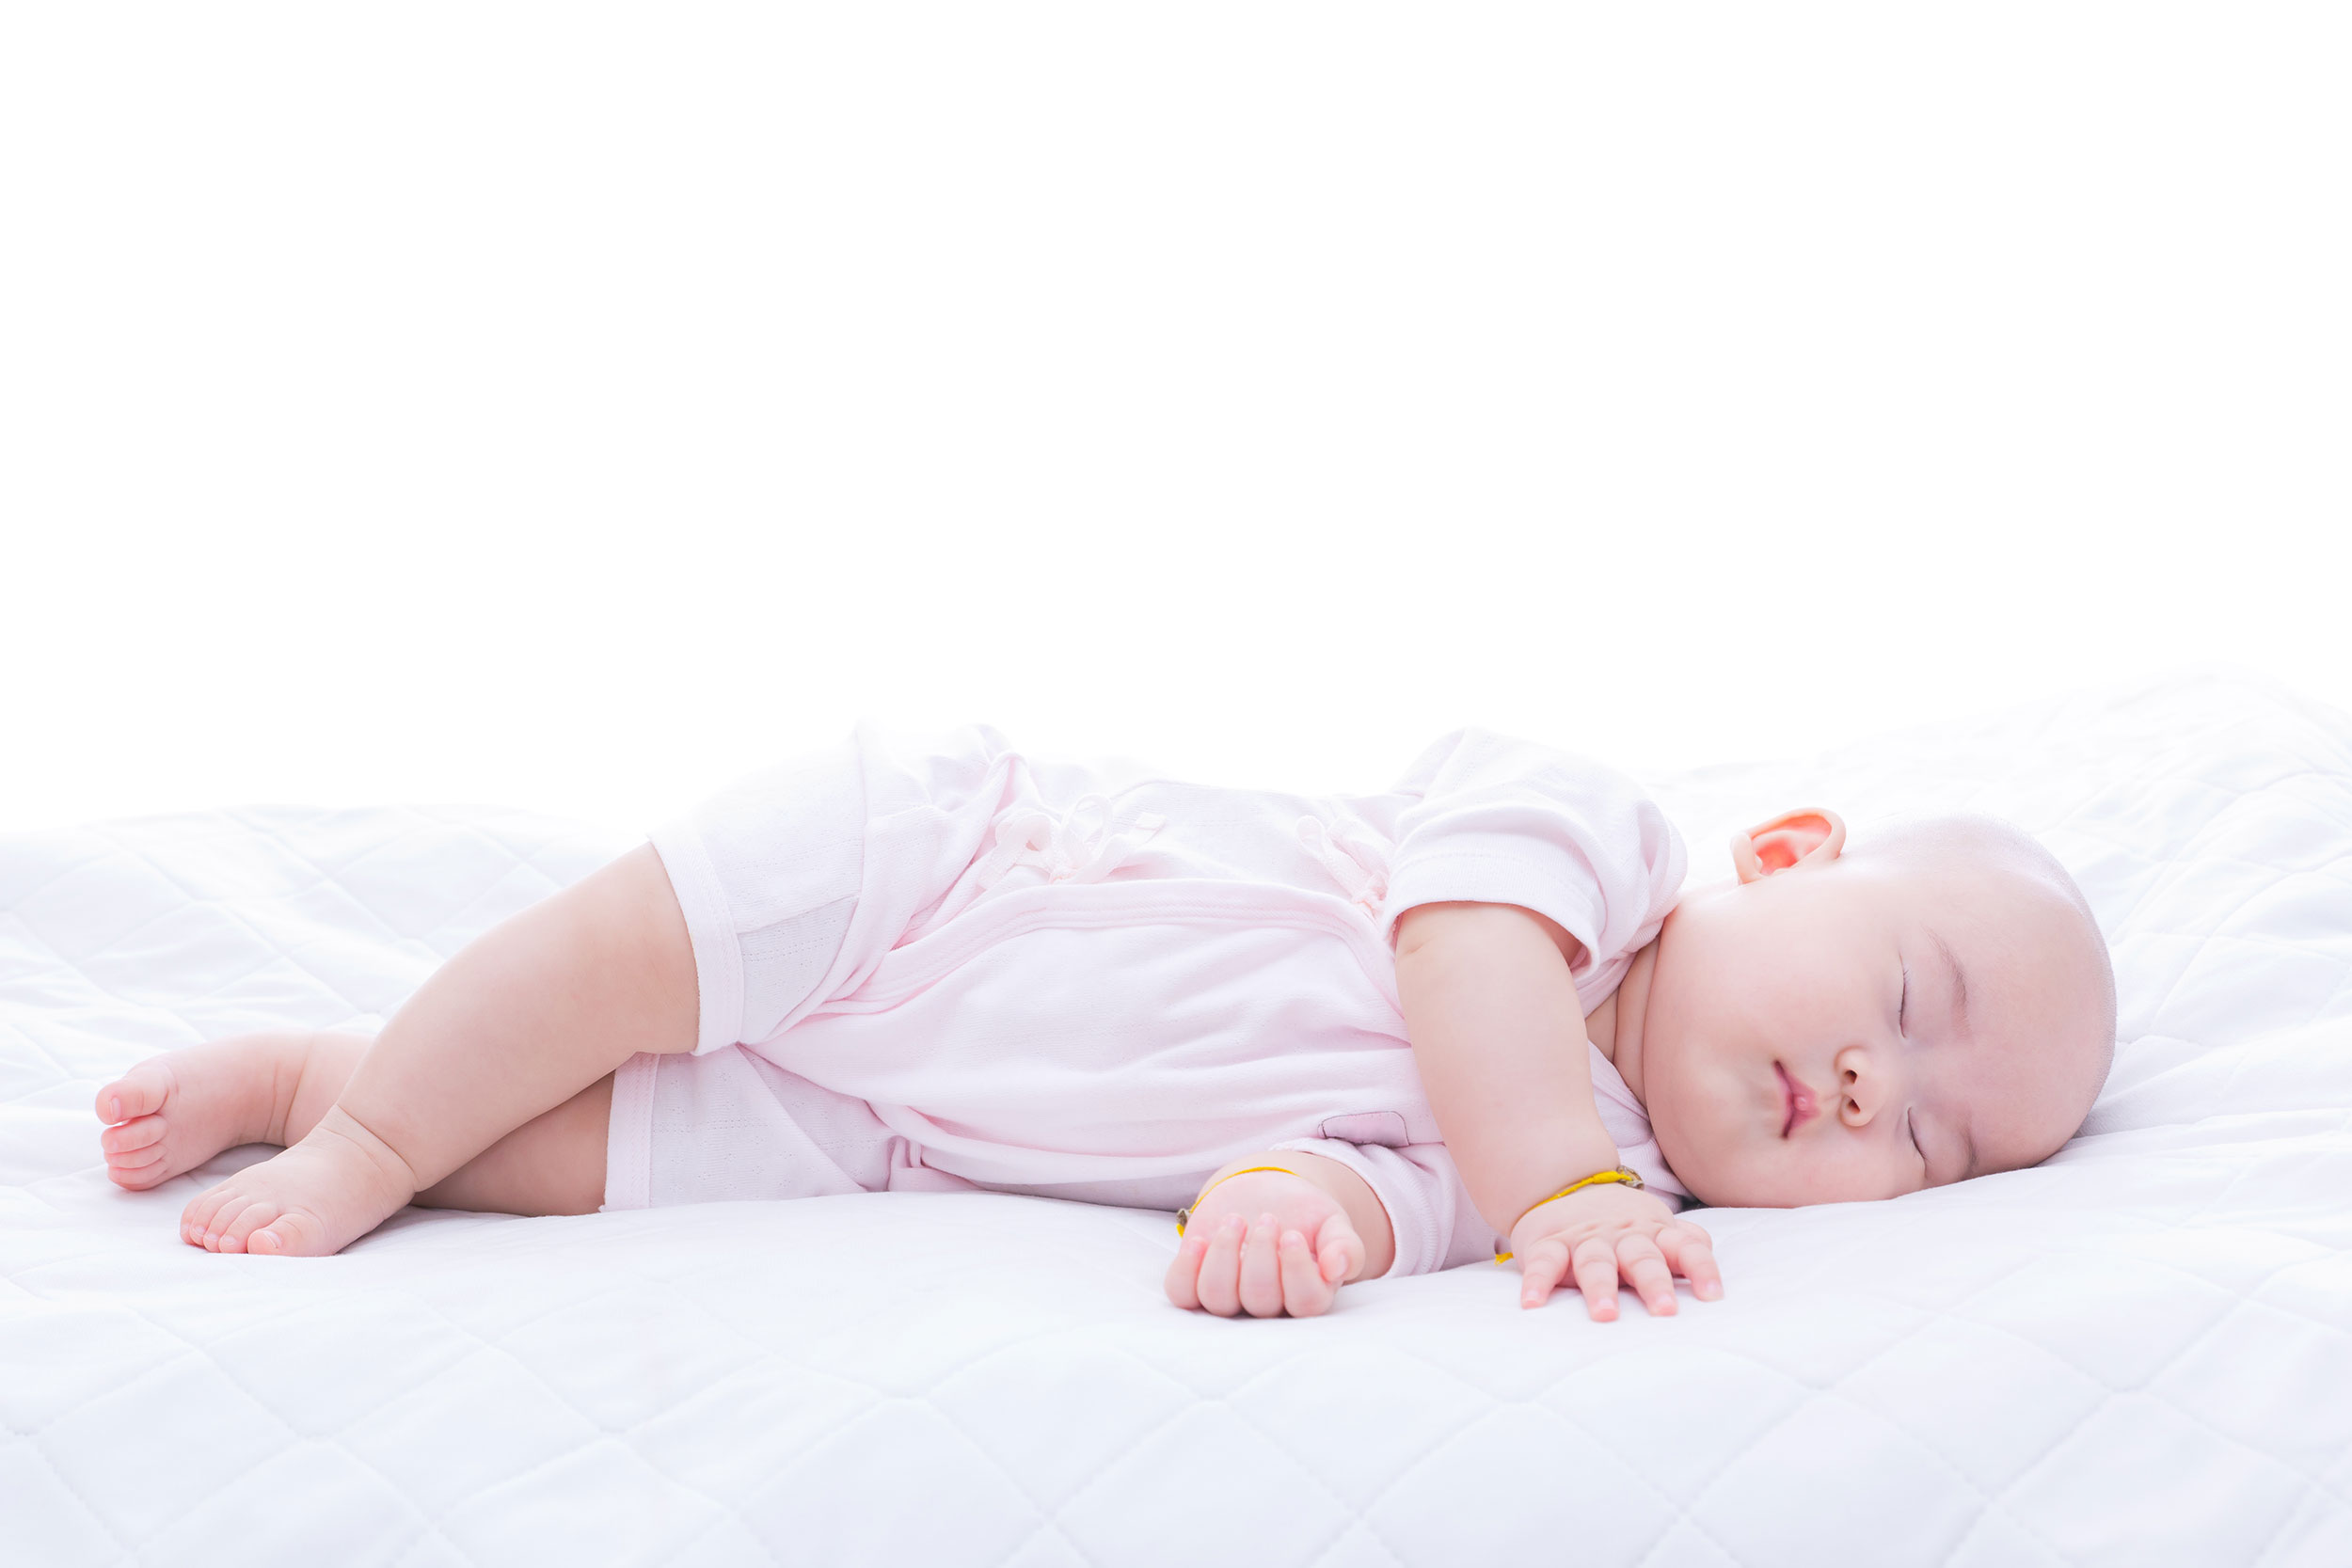 Kenakan baju yang lembut dan menyerap keringat agar bayi tidur nyaman